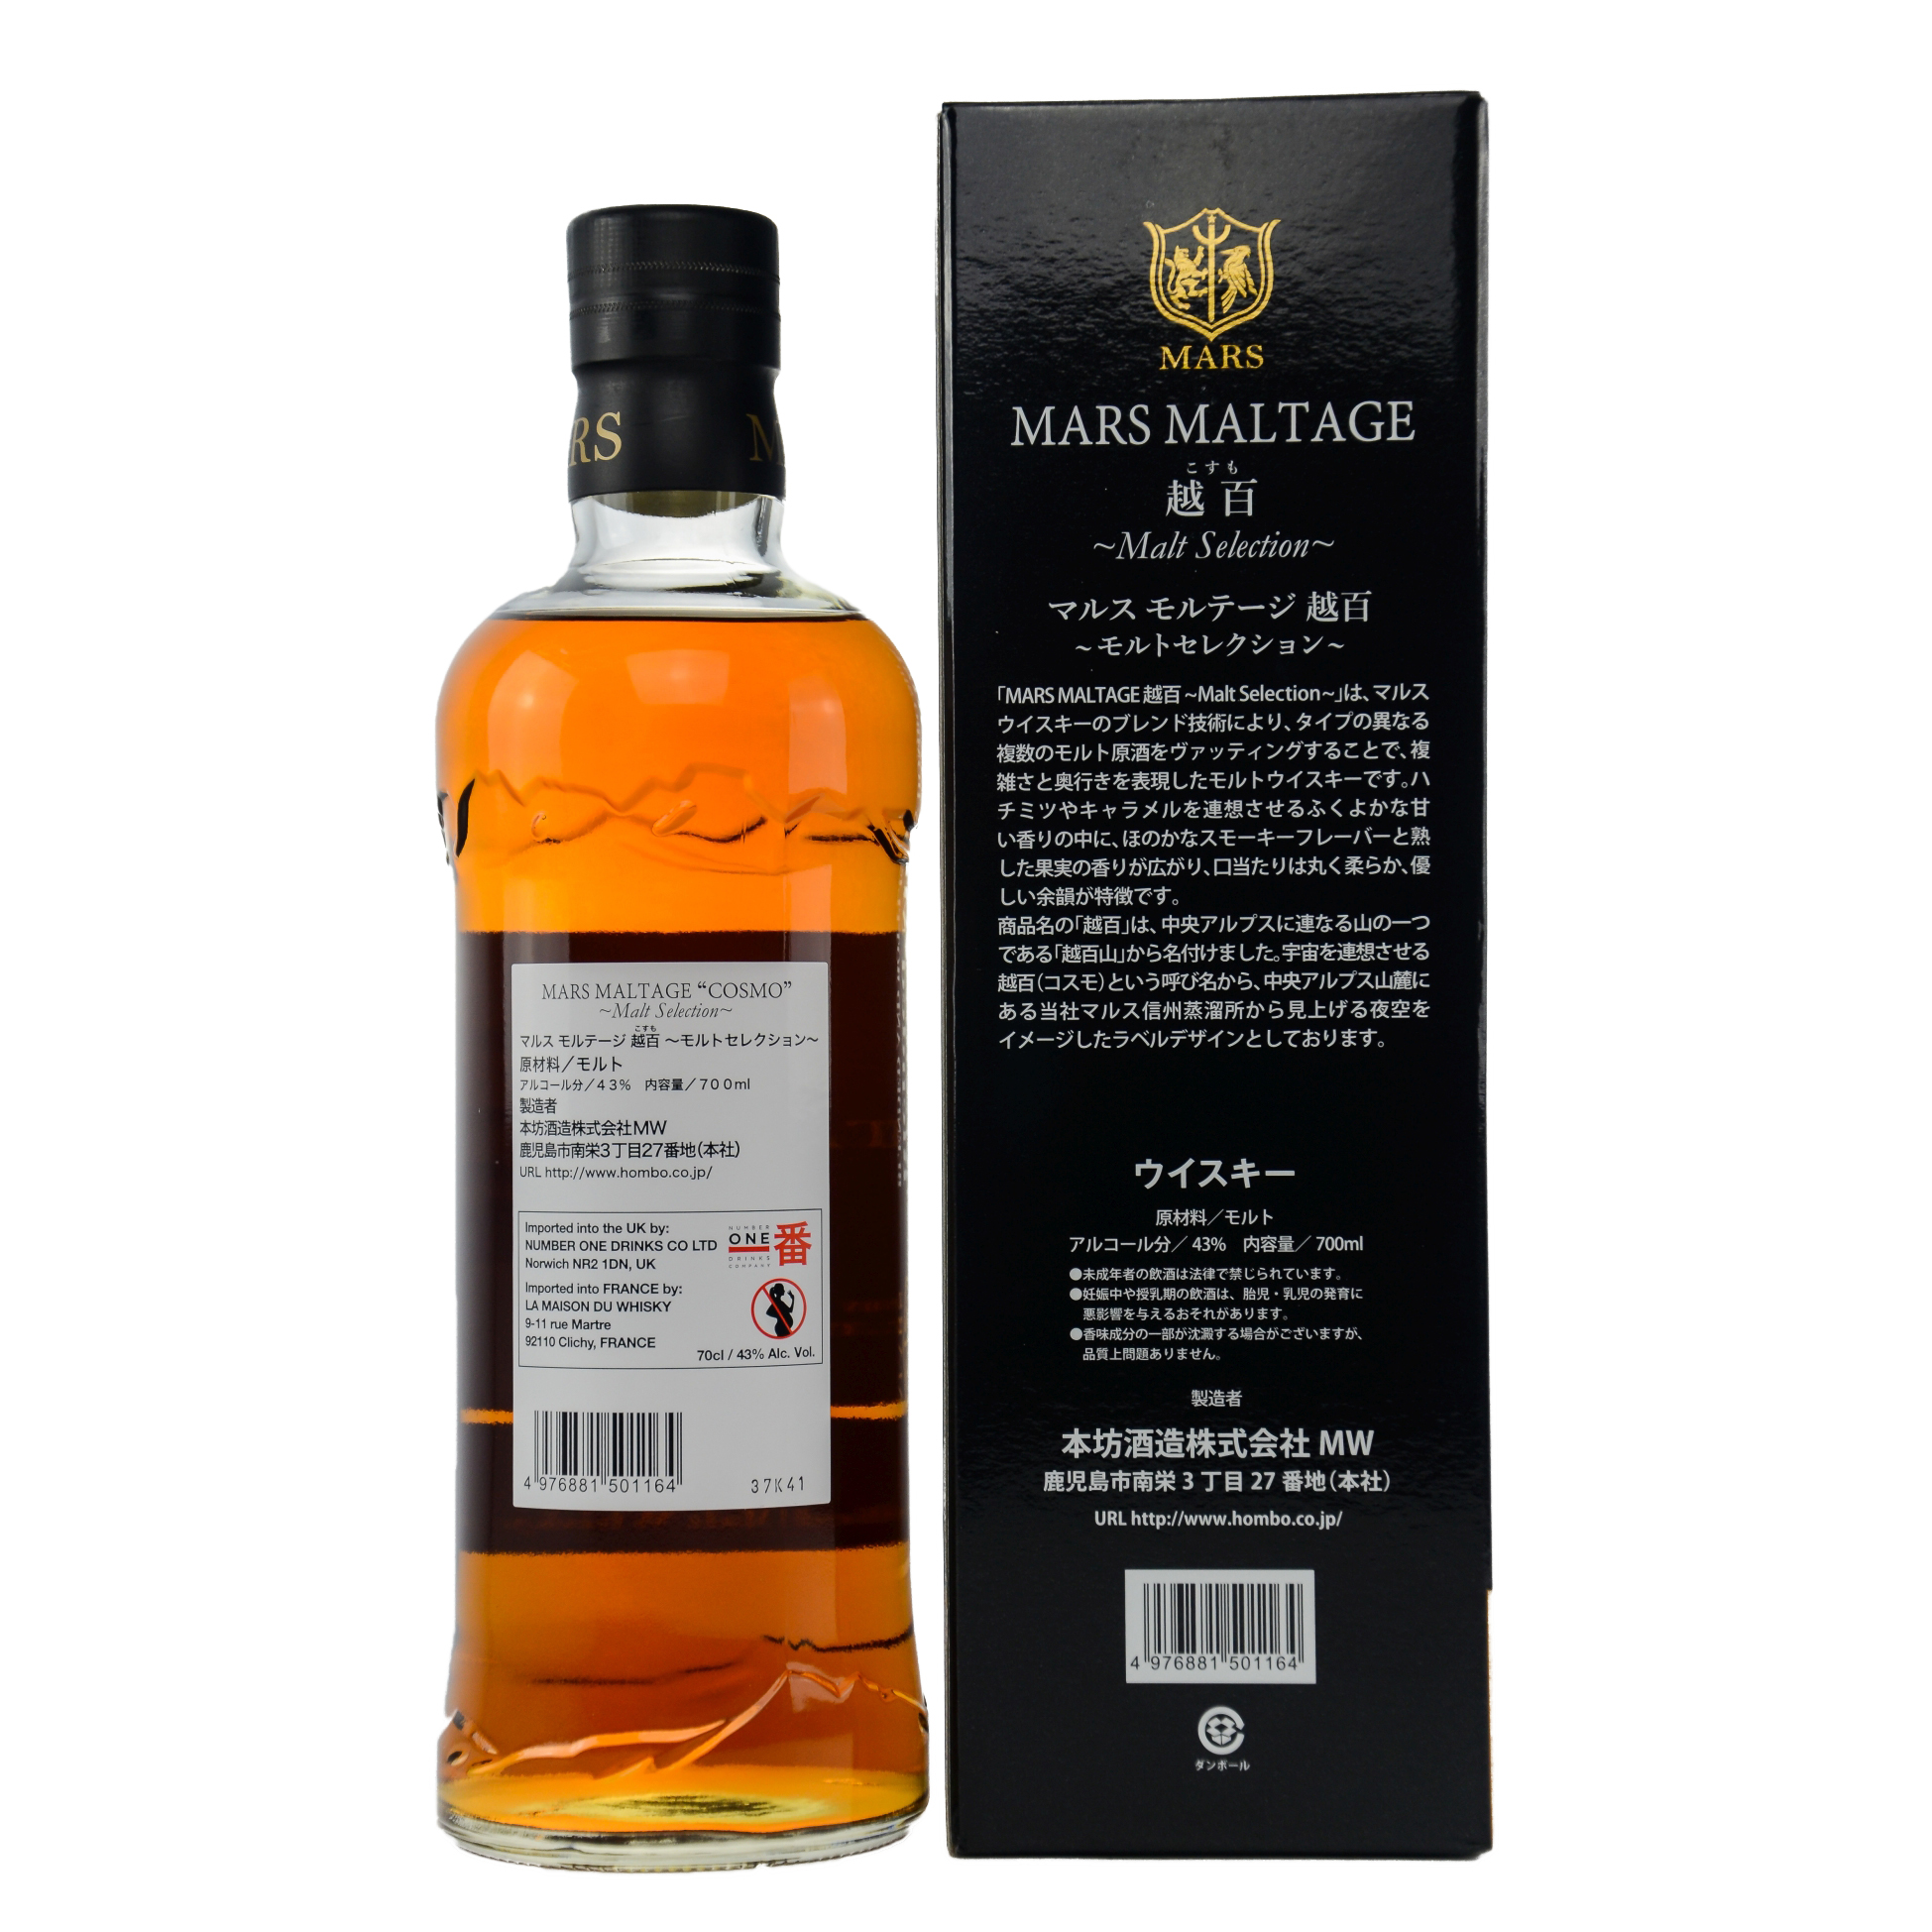 MARS COSMO - Blended Malt Japanese Whisky / 43% Vol. 0,7 ltr.